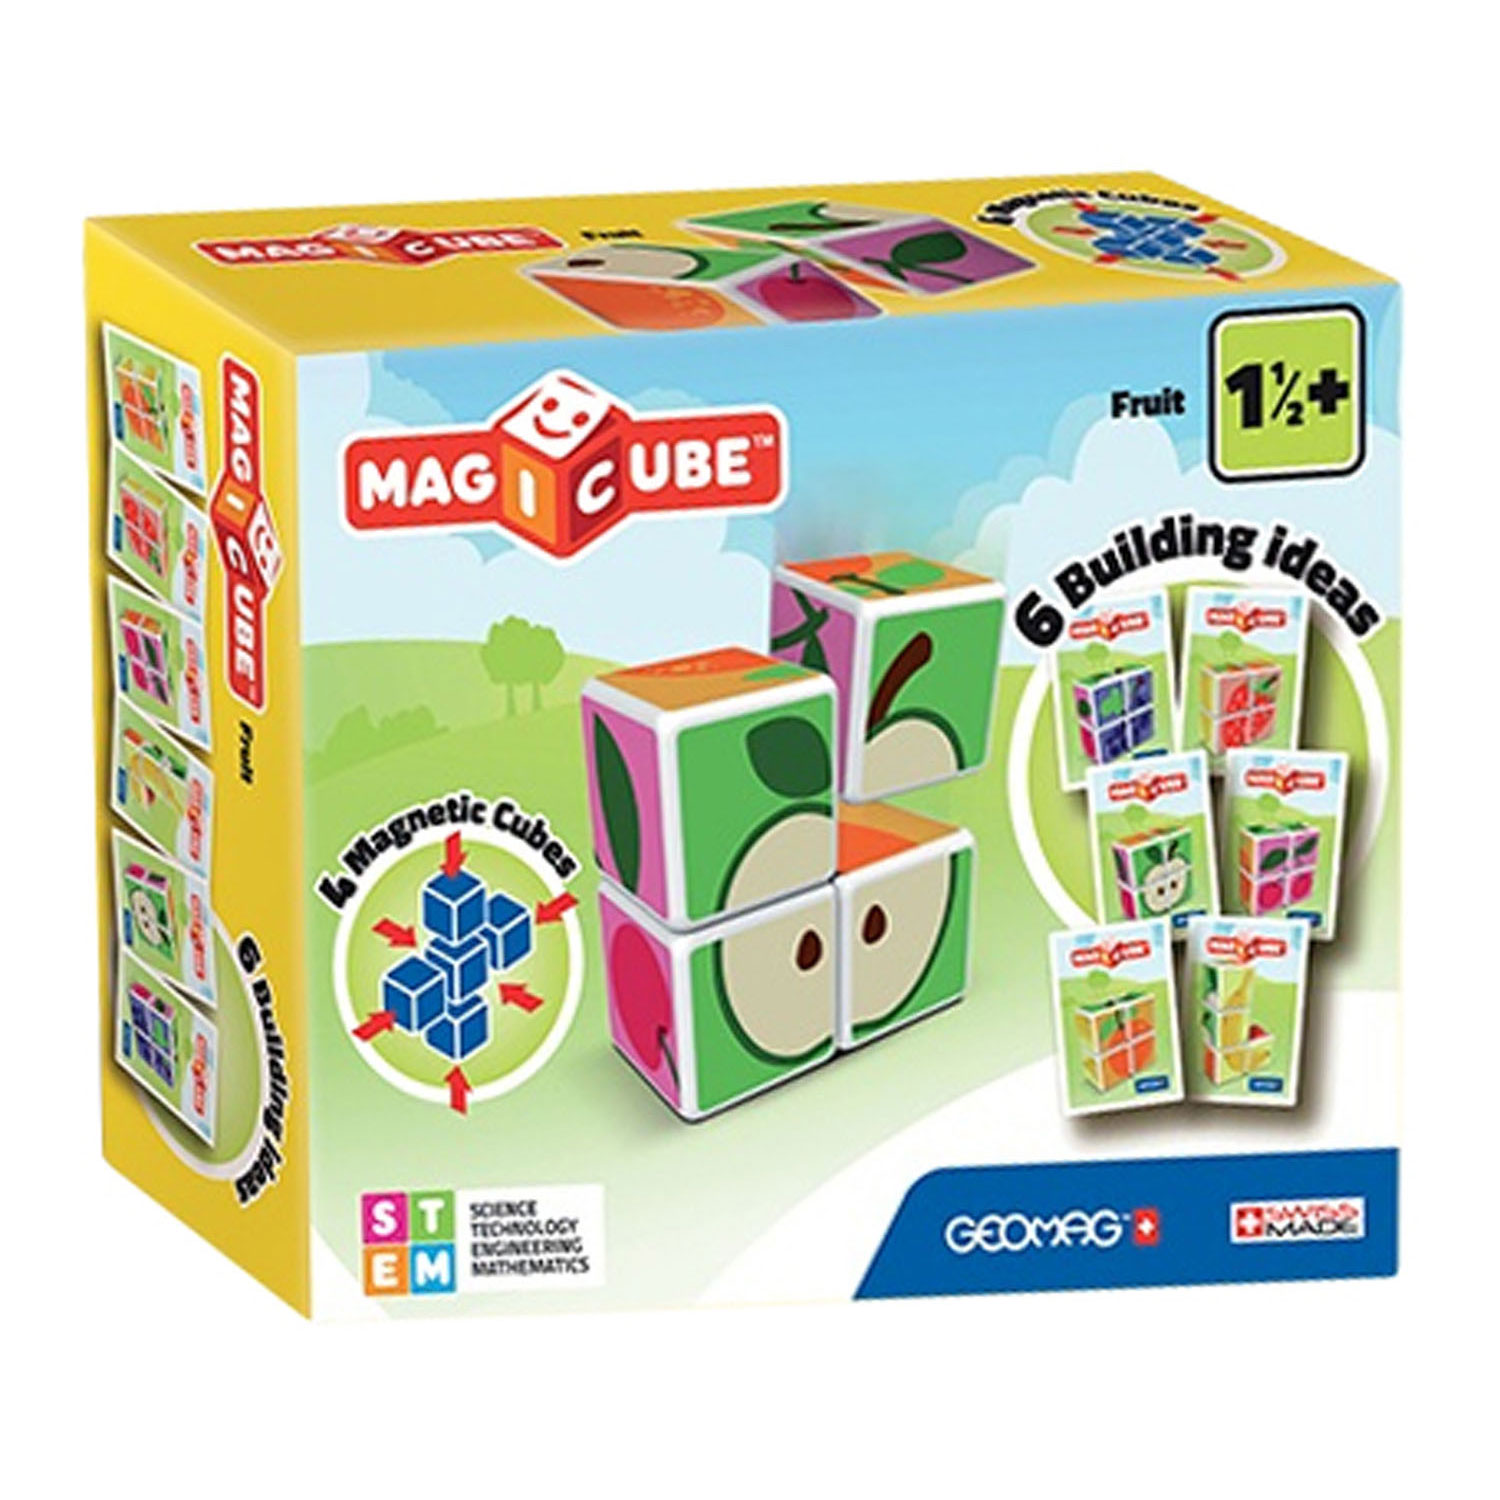 Geomag MagiCube - Fruit